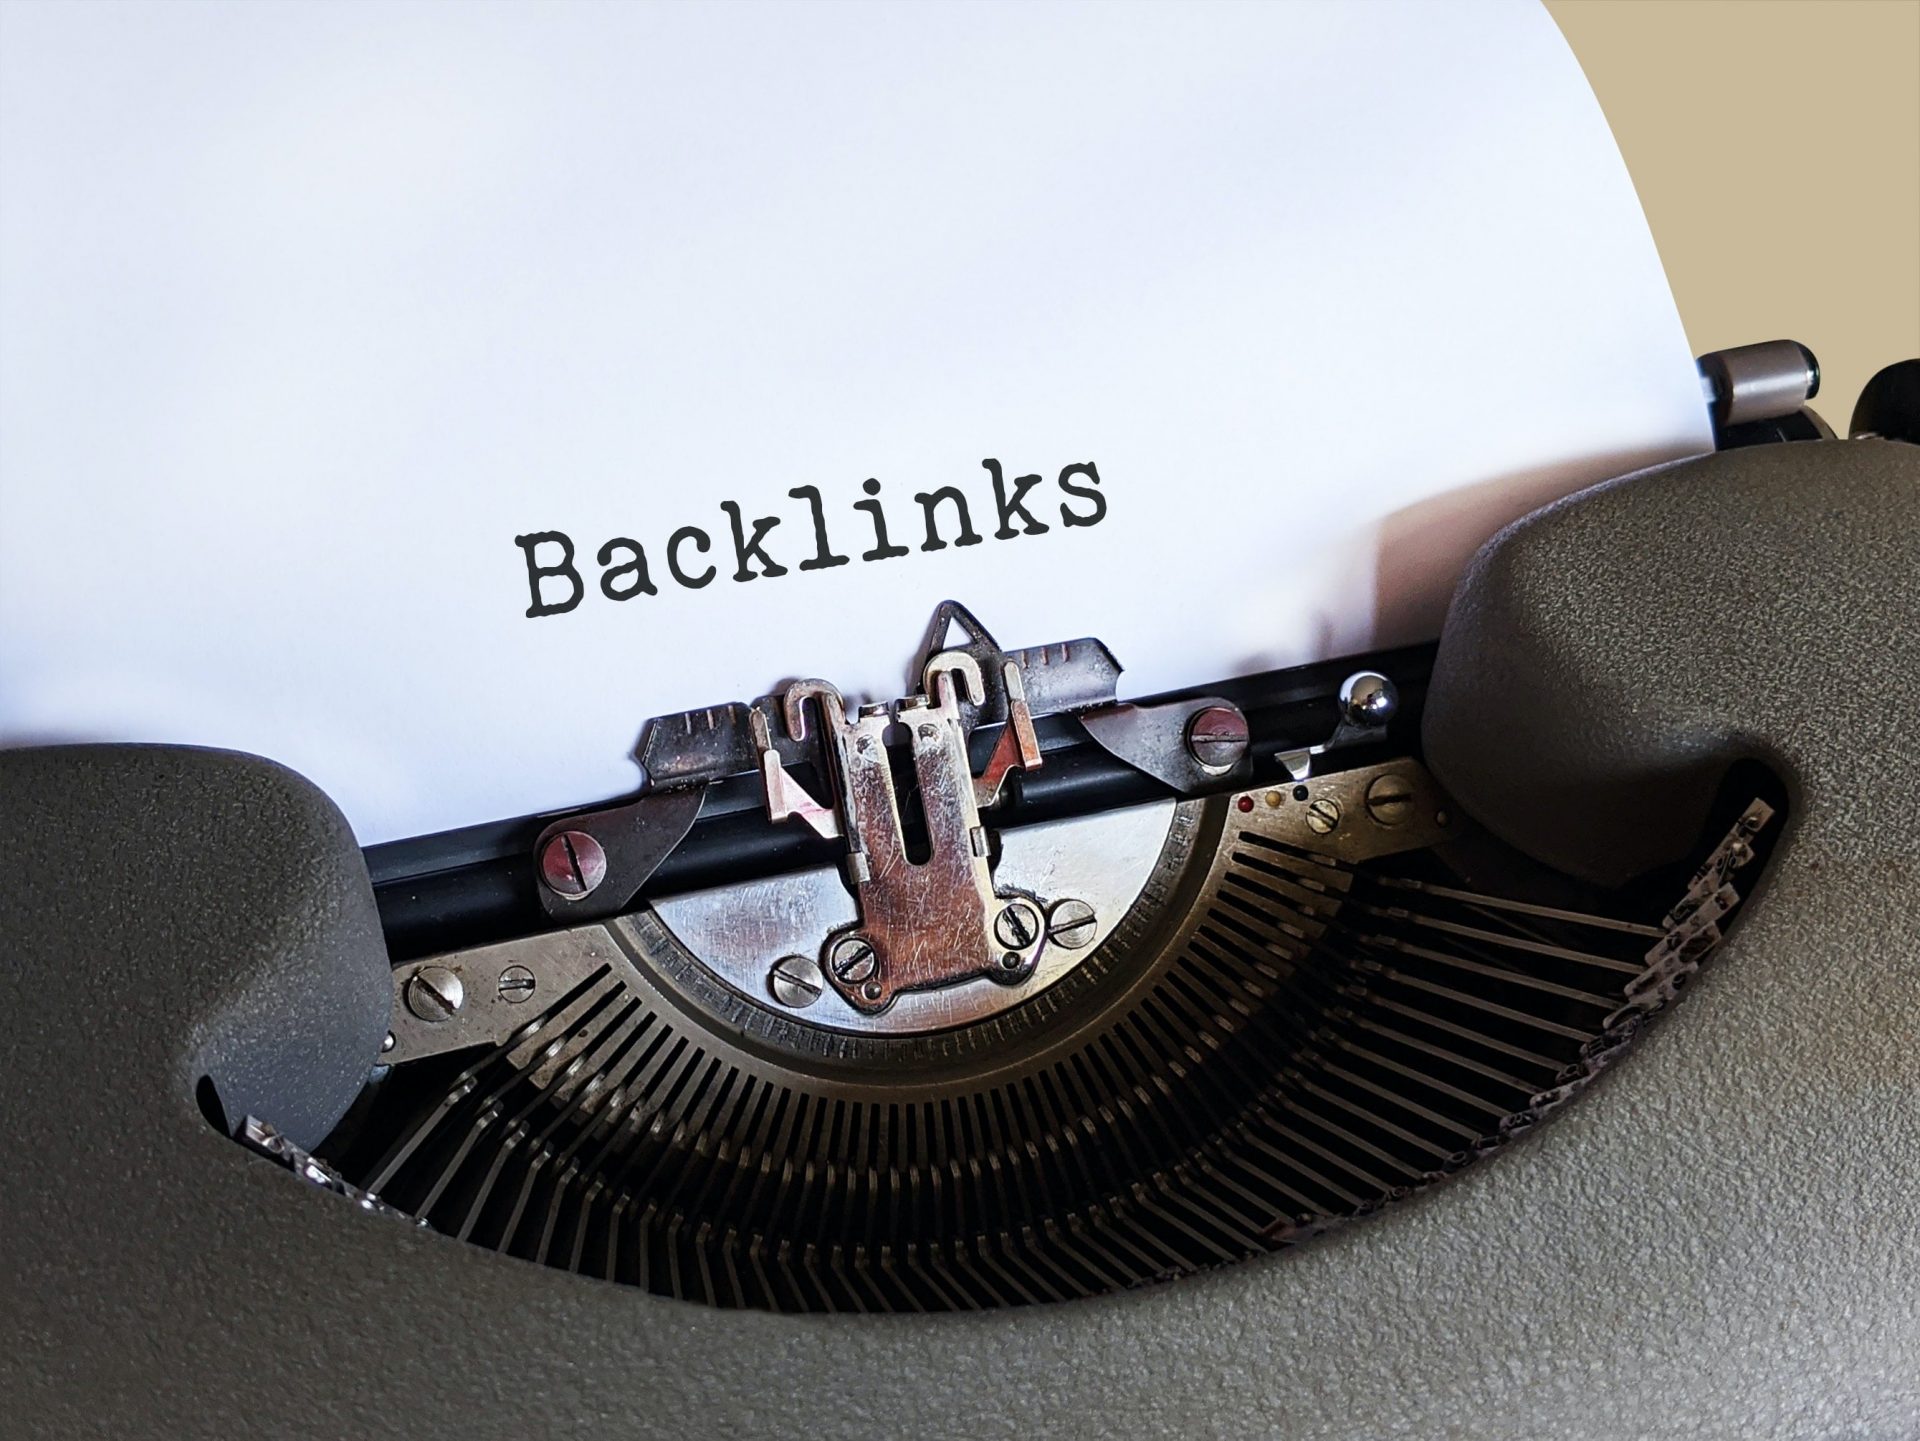 Backlinks, comment augmenter le nombre de liens entrants ?